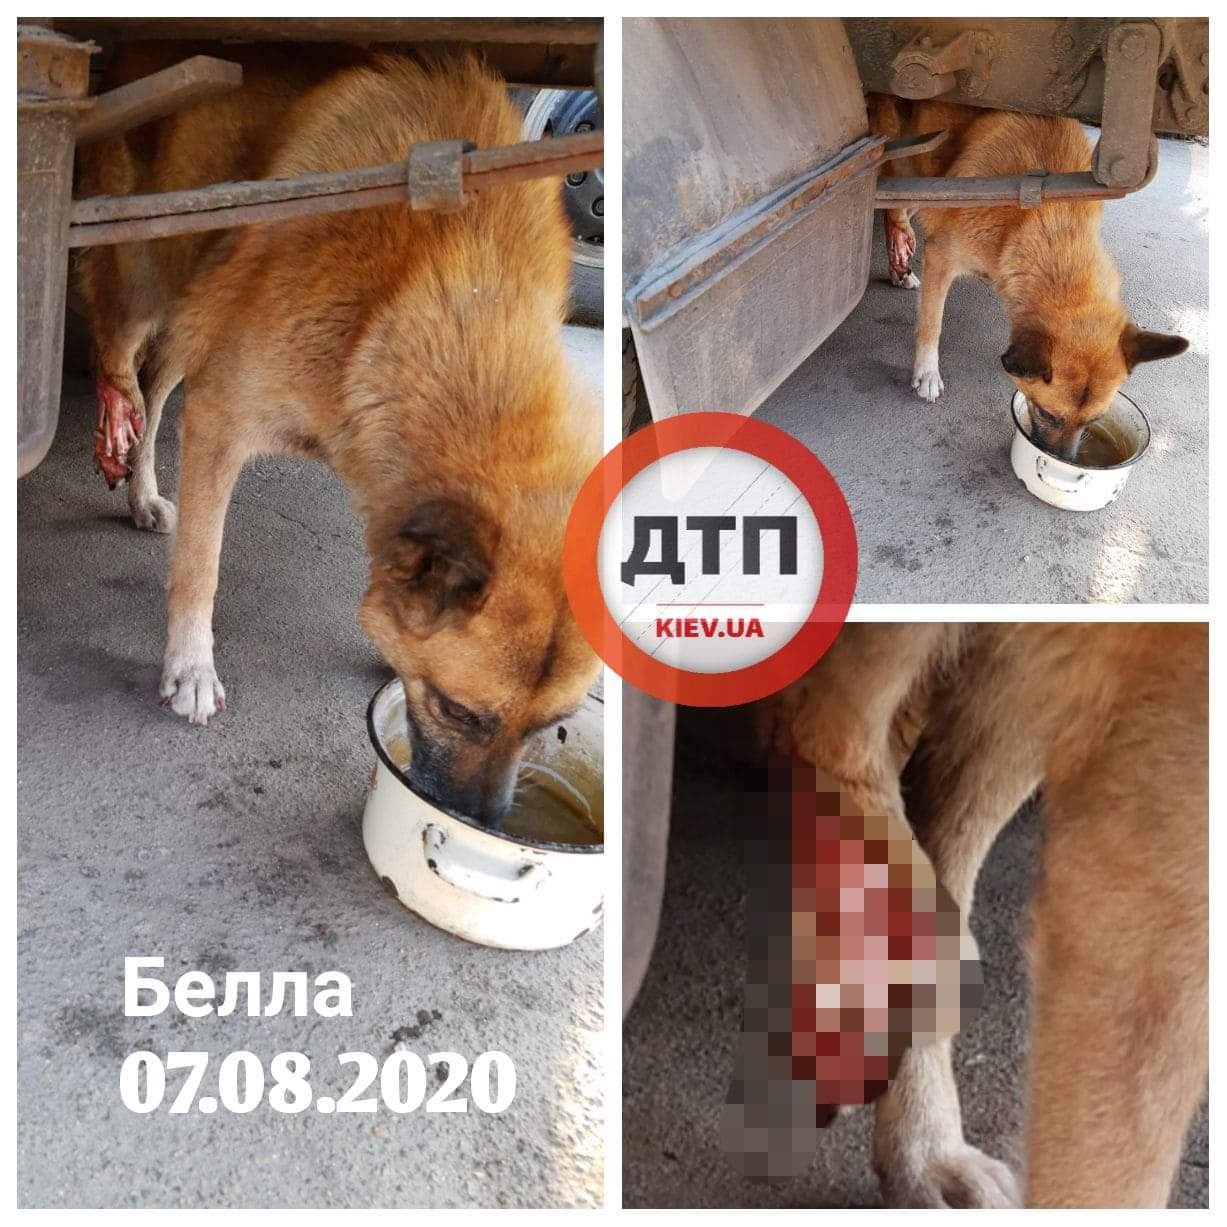 В Киеве автомобиль переехал лапу 10 летней собаке: открытый перелом - сбор средств на операцию